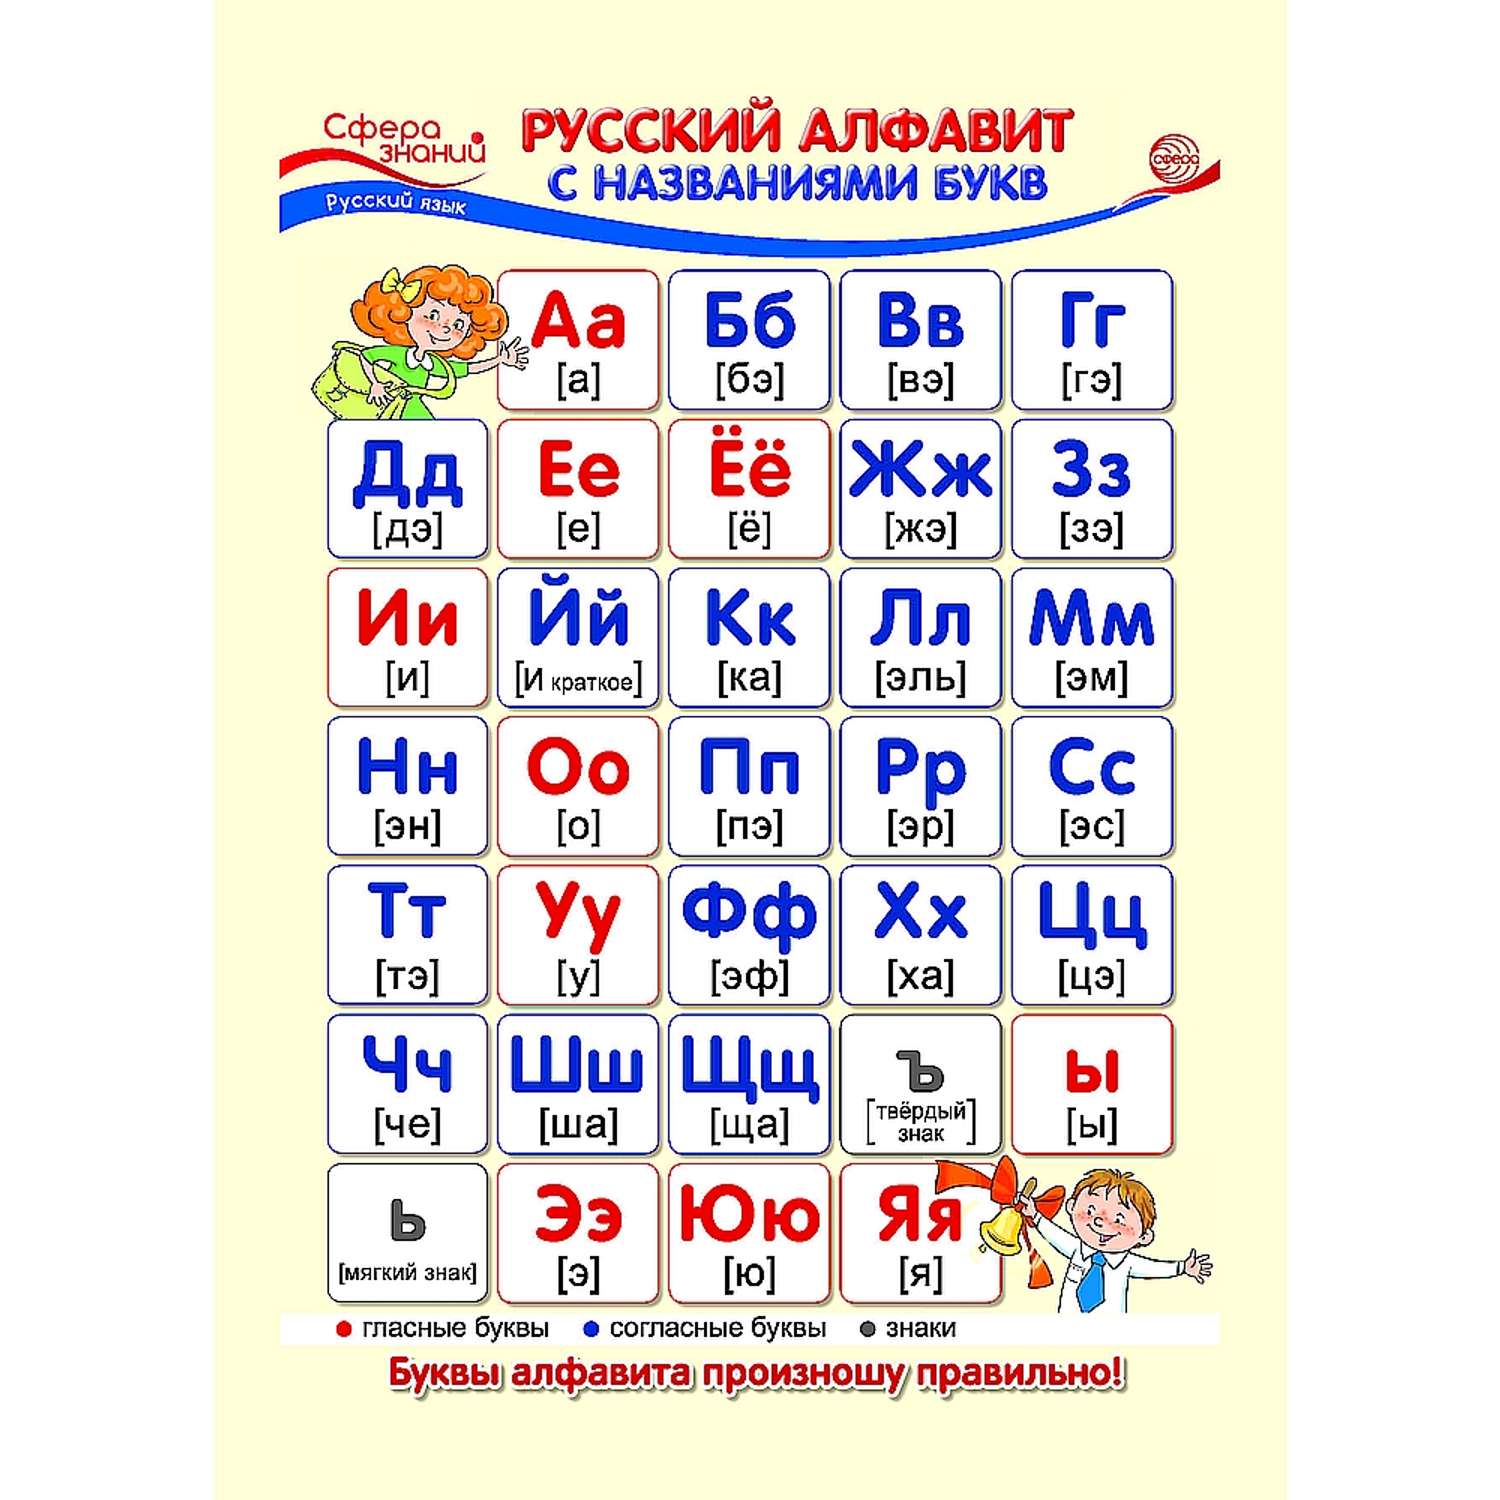 Русский алфавит это. Русский алфавит. Буквы для плаката. Плакат. Русский алфавит. Название букв русского алфавита.